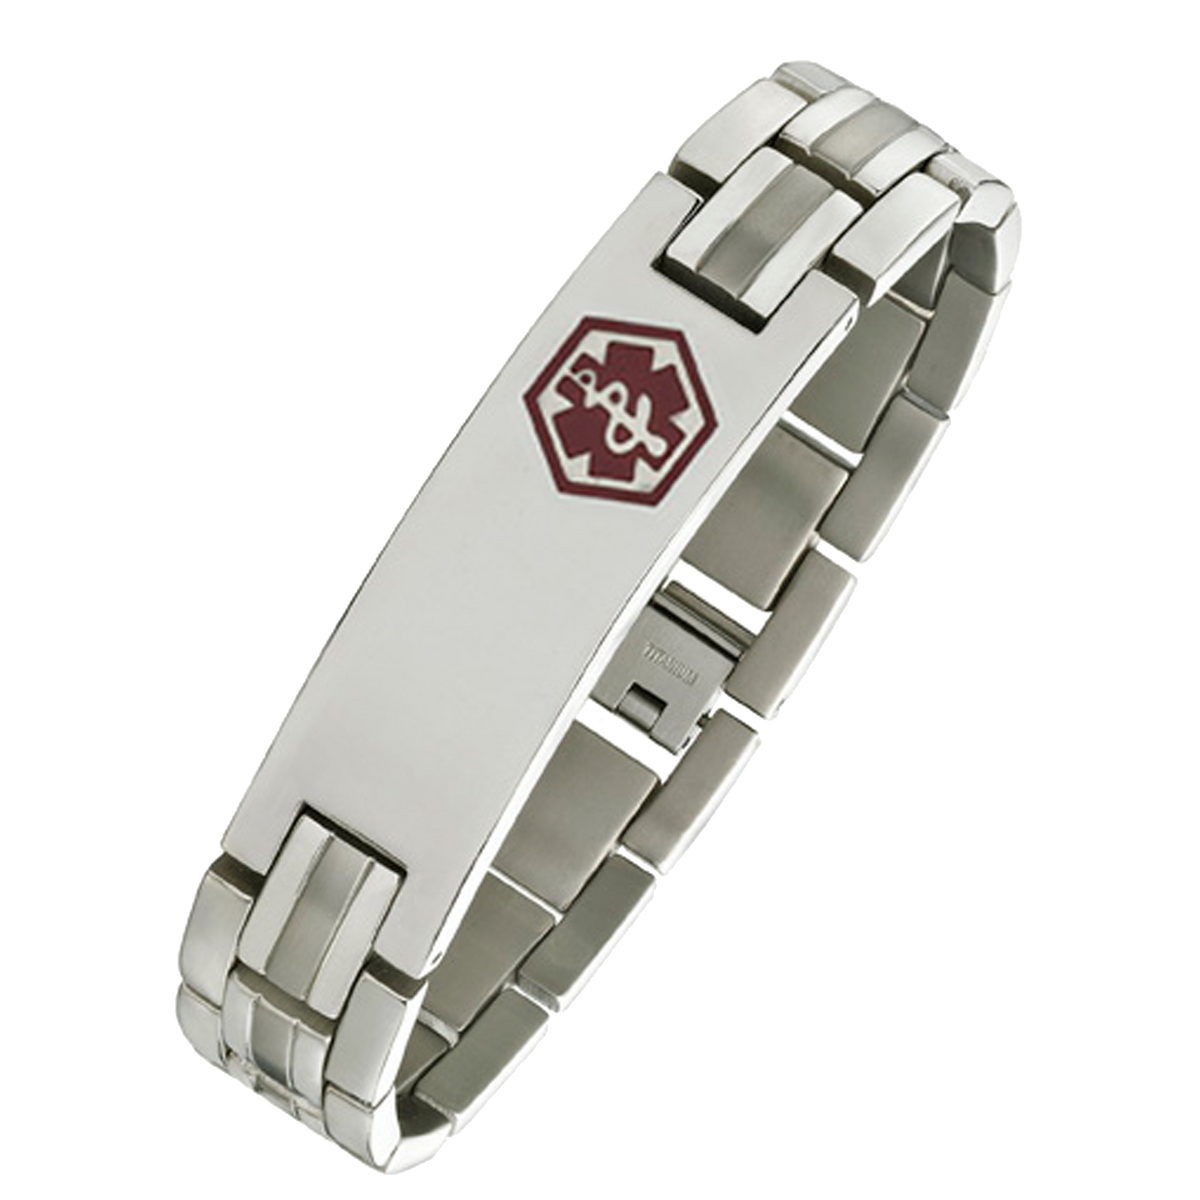 Alpine - Titanium medical id bracelet